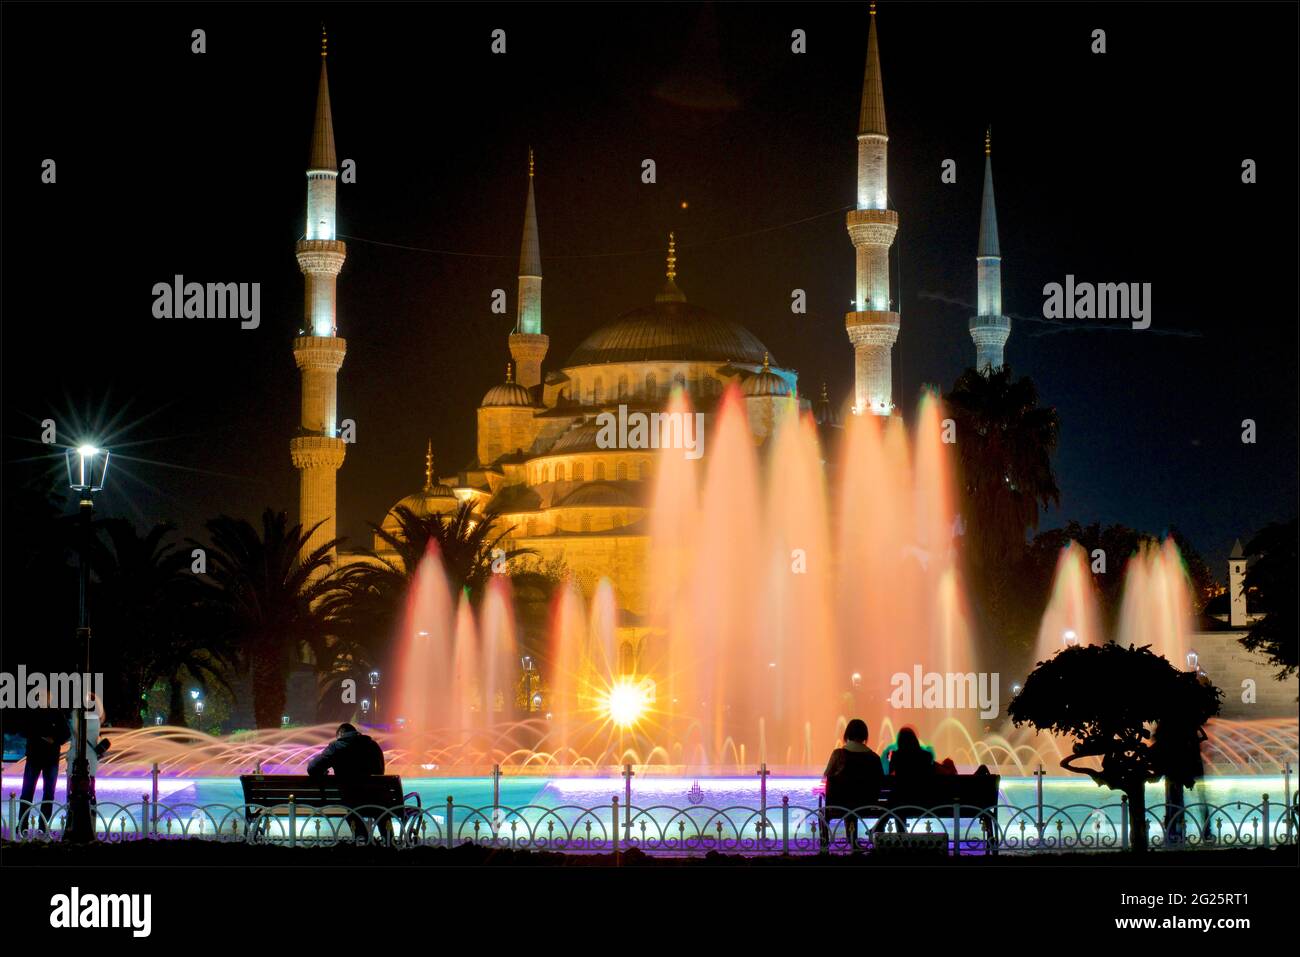 Mosquée Sultan Ahmed (turc : Sultan Ahmet Camii), également connue sous le nom de Mosquée bleue. Une mosquée du vendredi de l'époque ottomane située à Istanbul, en Turquie. Illuminé la nuit; fontaine d'eau du Sultan Ahmad Maydan à éclairage coloré Banque D'Images